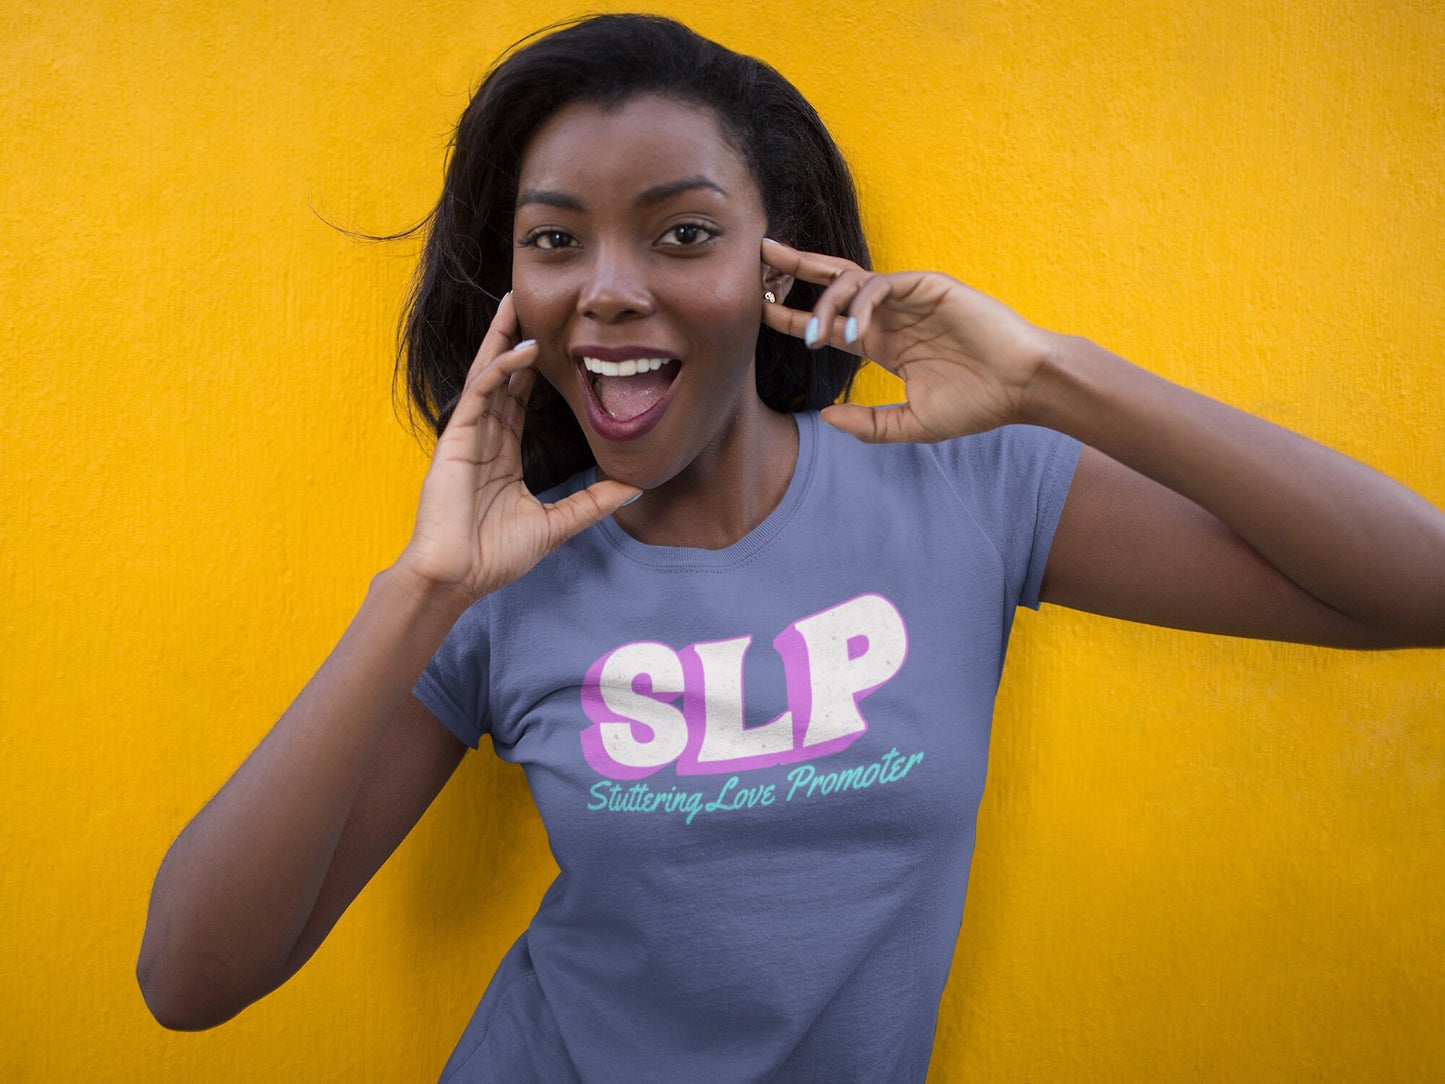 SLP Stuttering Stuttering Love Promoter T-shirt